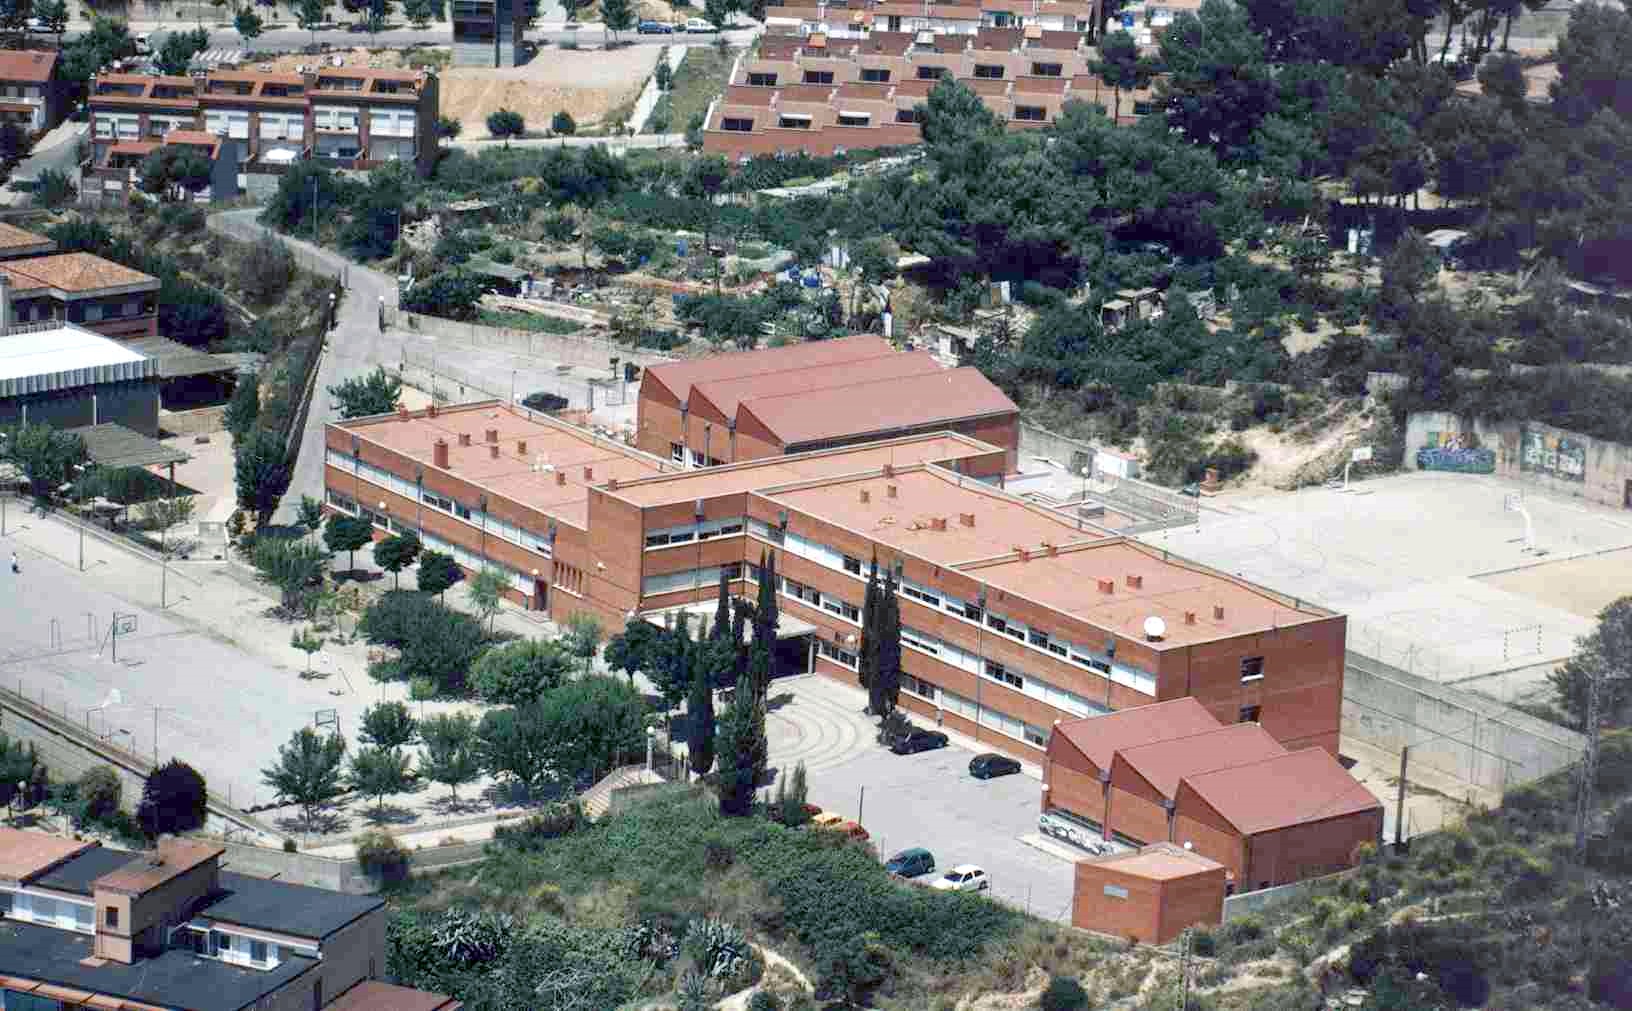 Institut Bernat el Ferrer